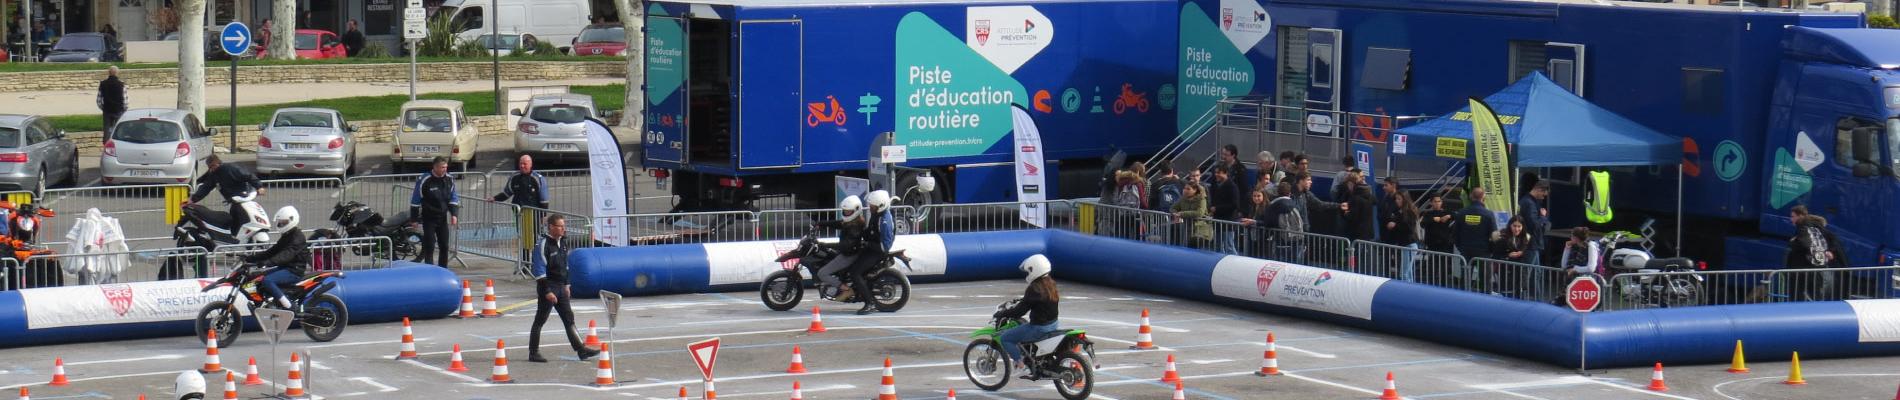 Initiation au deux-roues : les jeunes en piste pour la sécurité à Cavaillon (84), du 27 au 30 mars